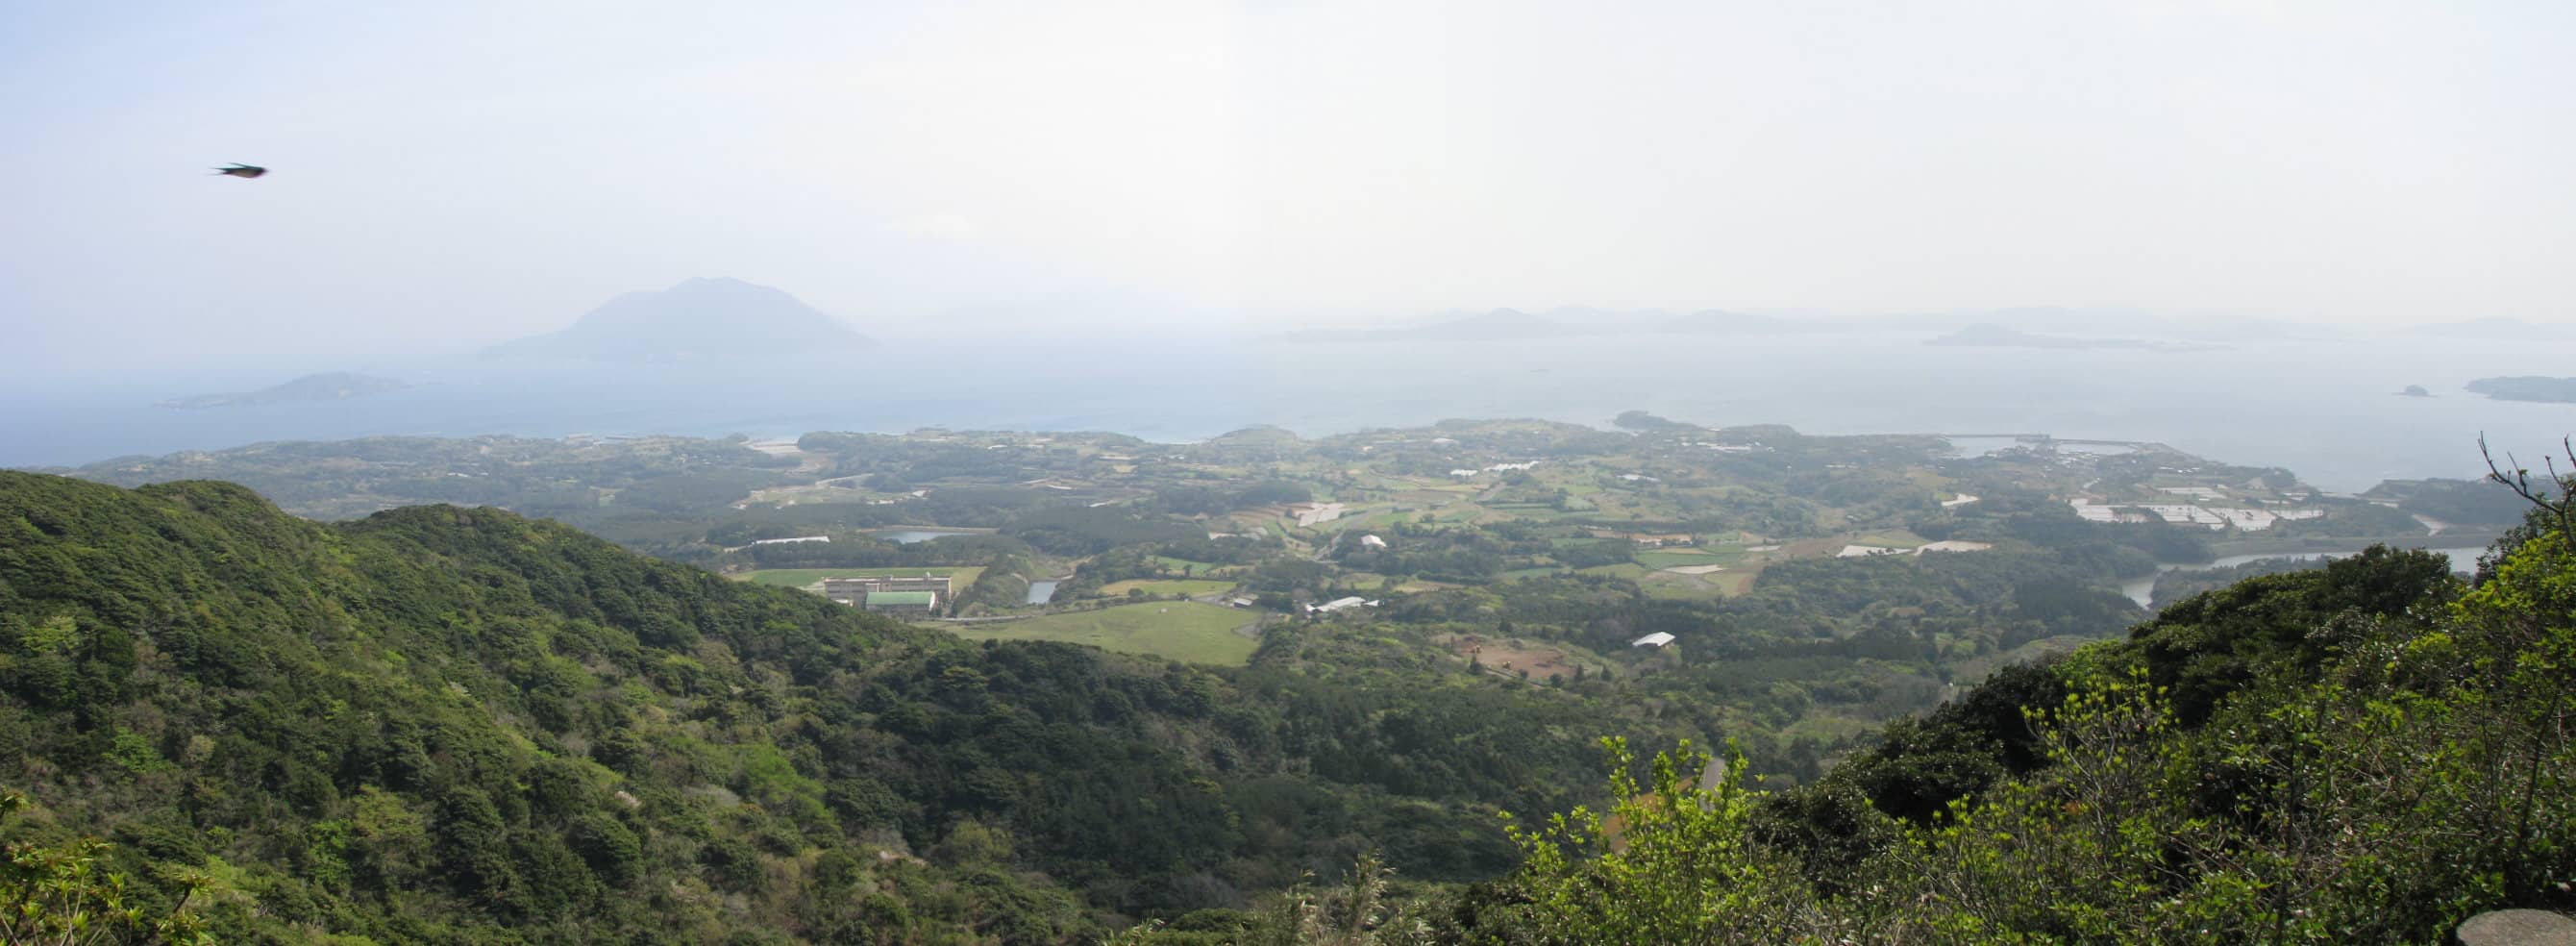 城ヶ岳からの眺めの写真